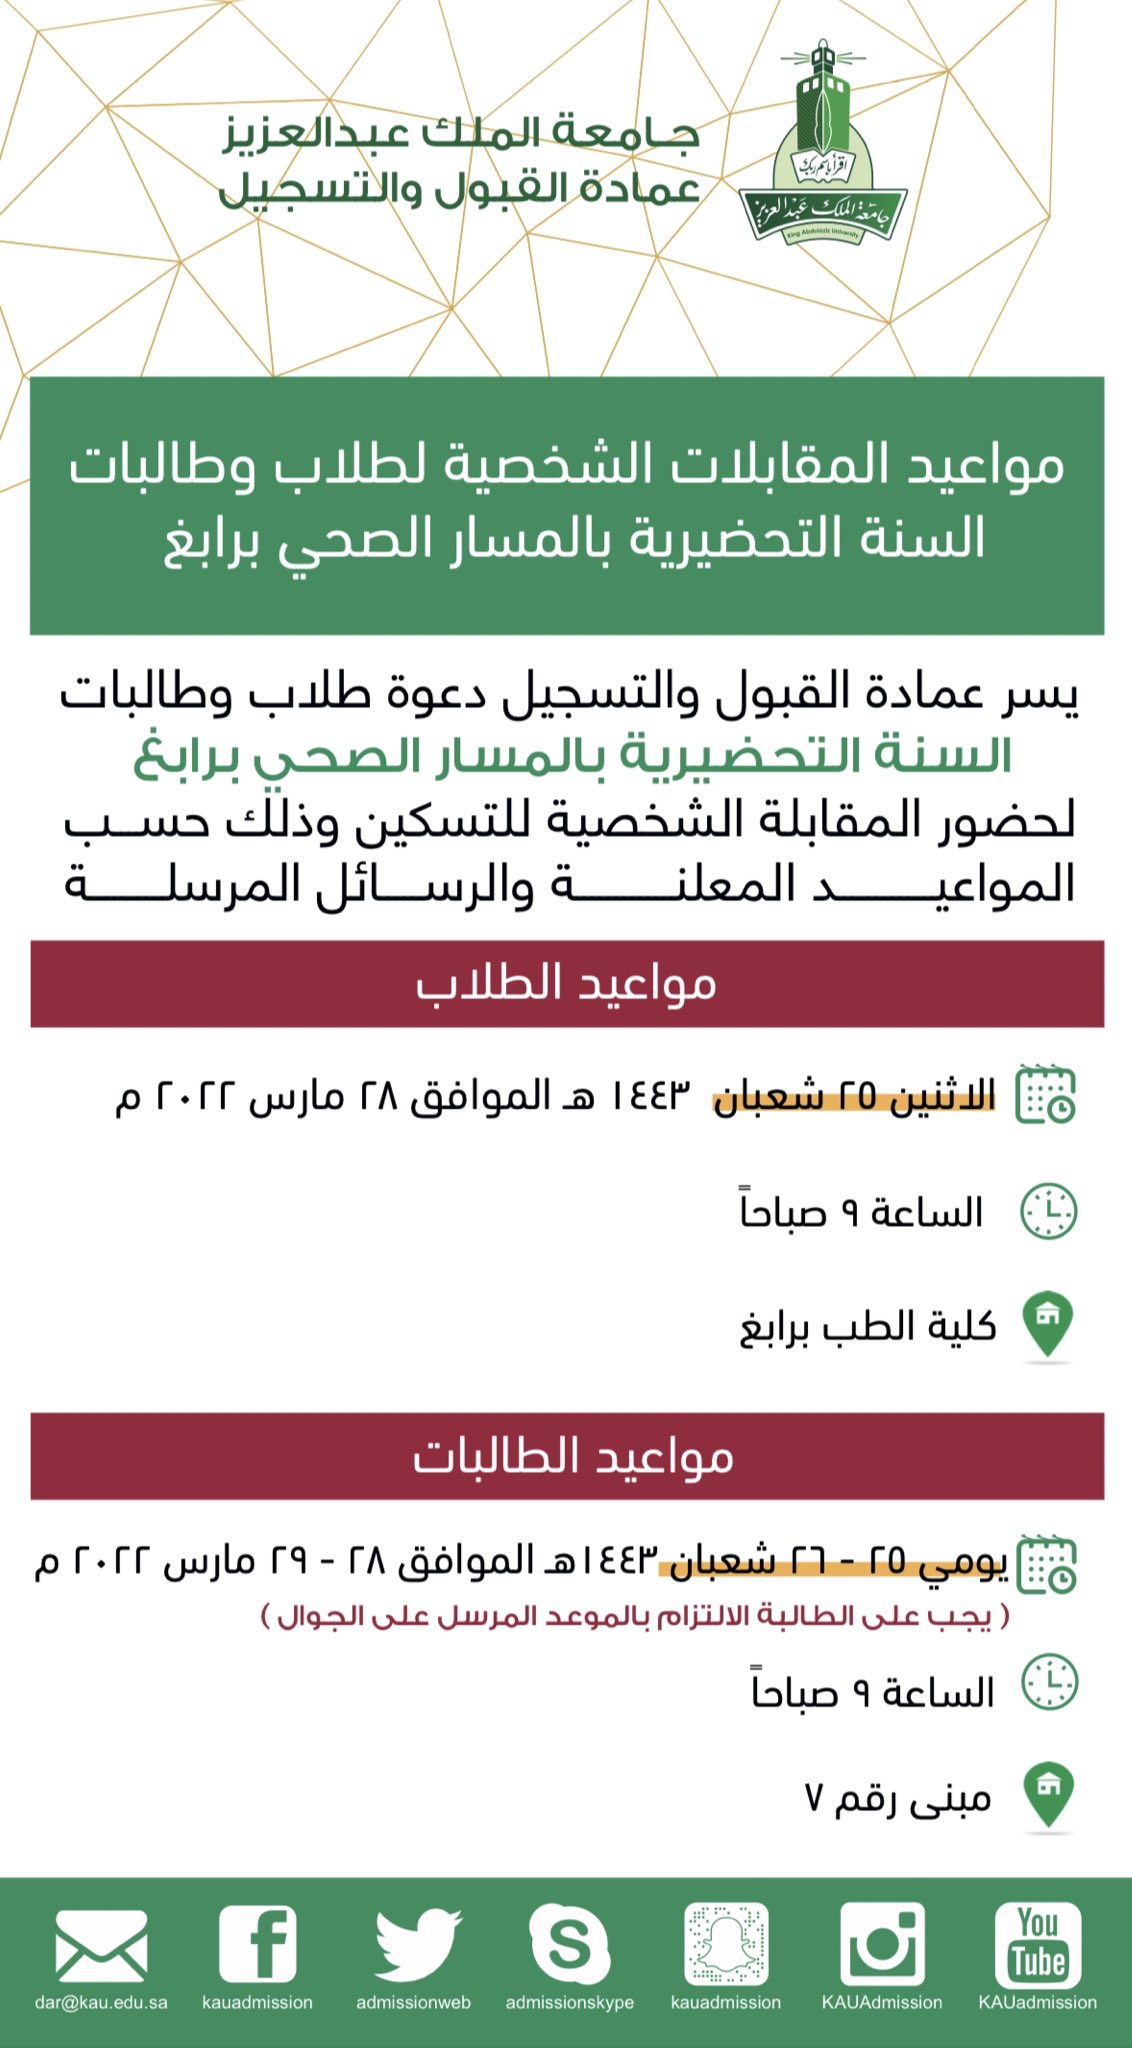 جامعة عمادة الملك عبدالعزيز القبول والتسجيل خرائط الوصول